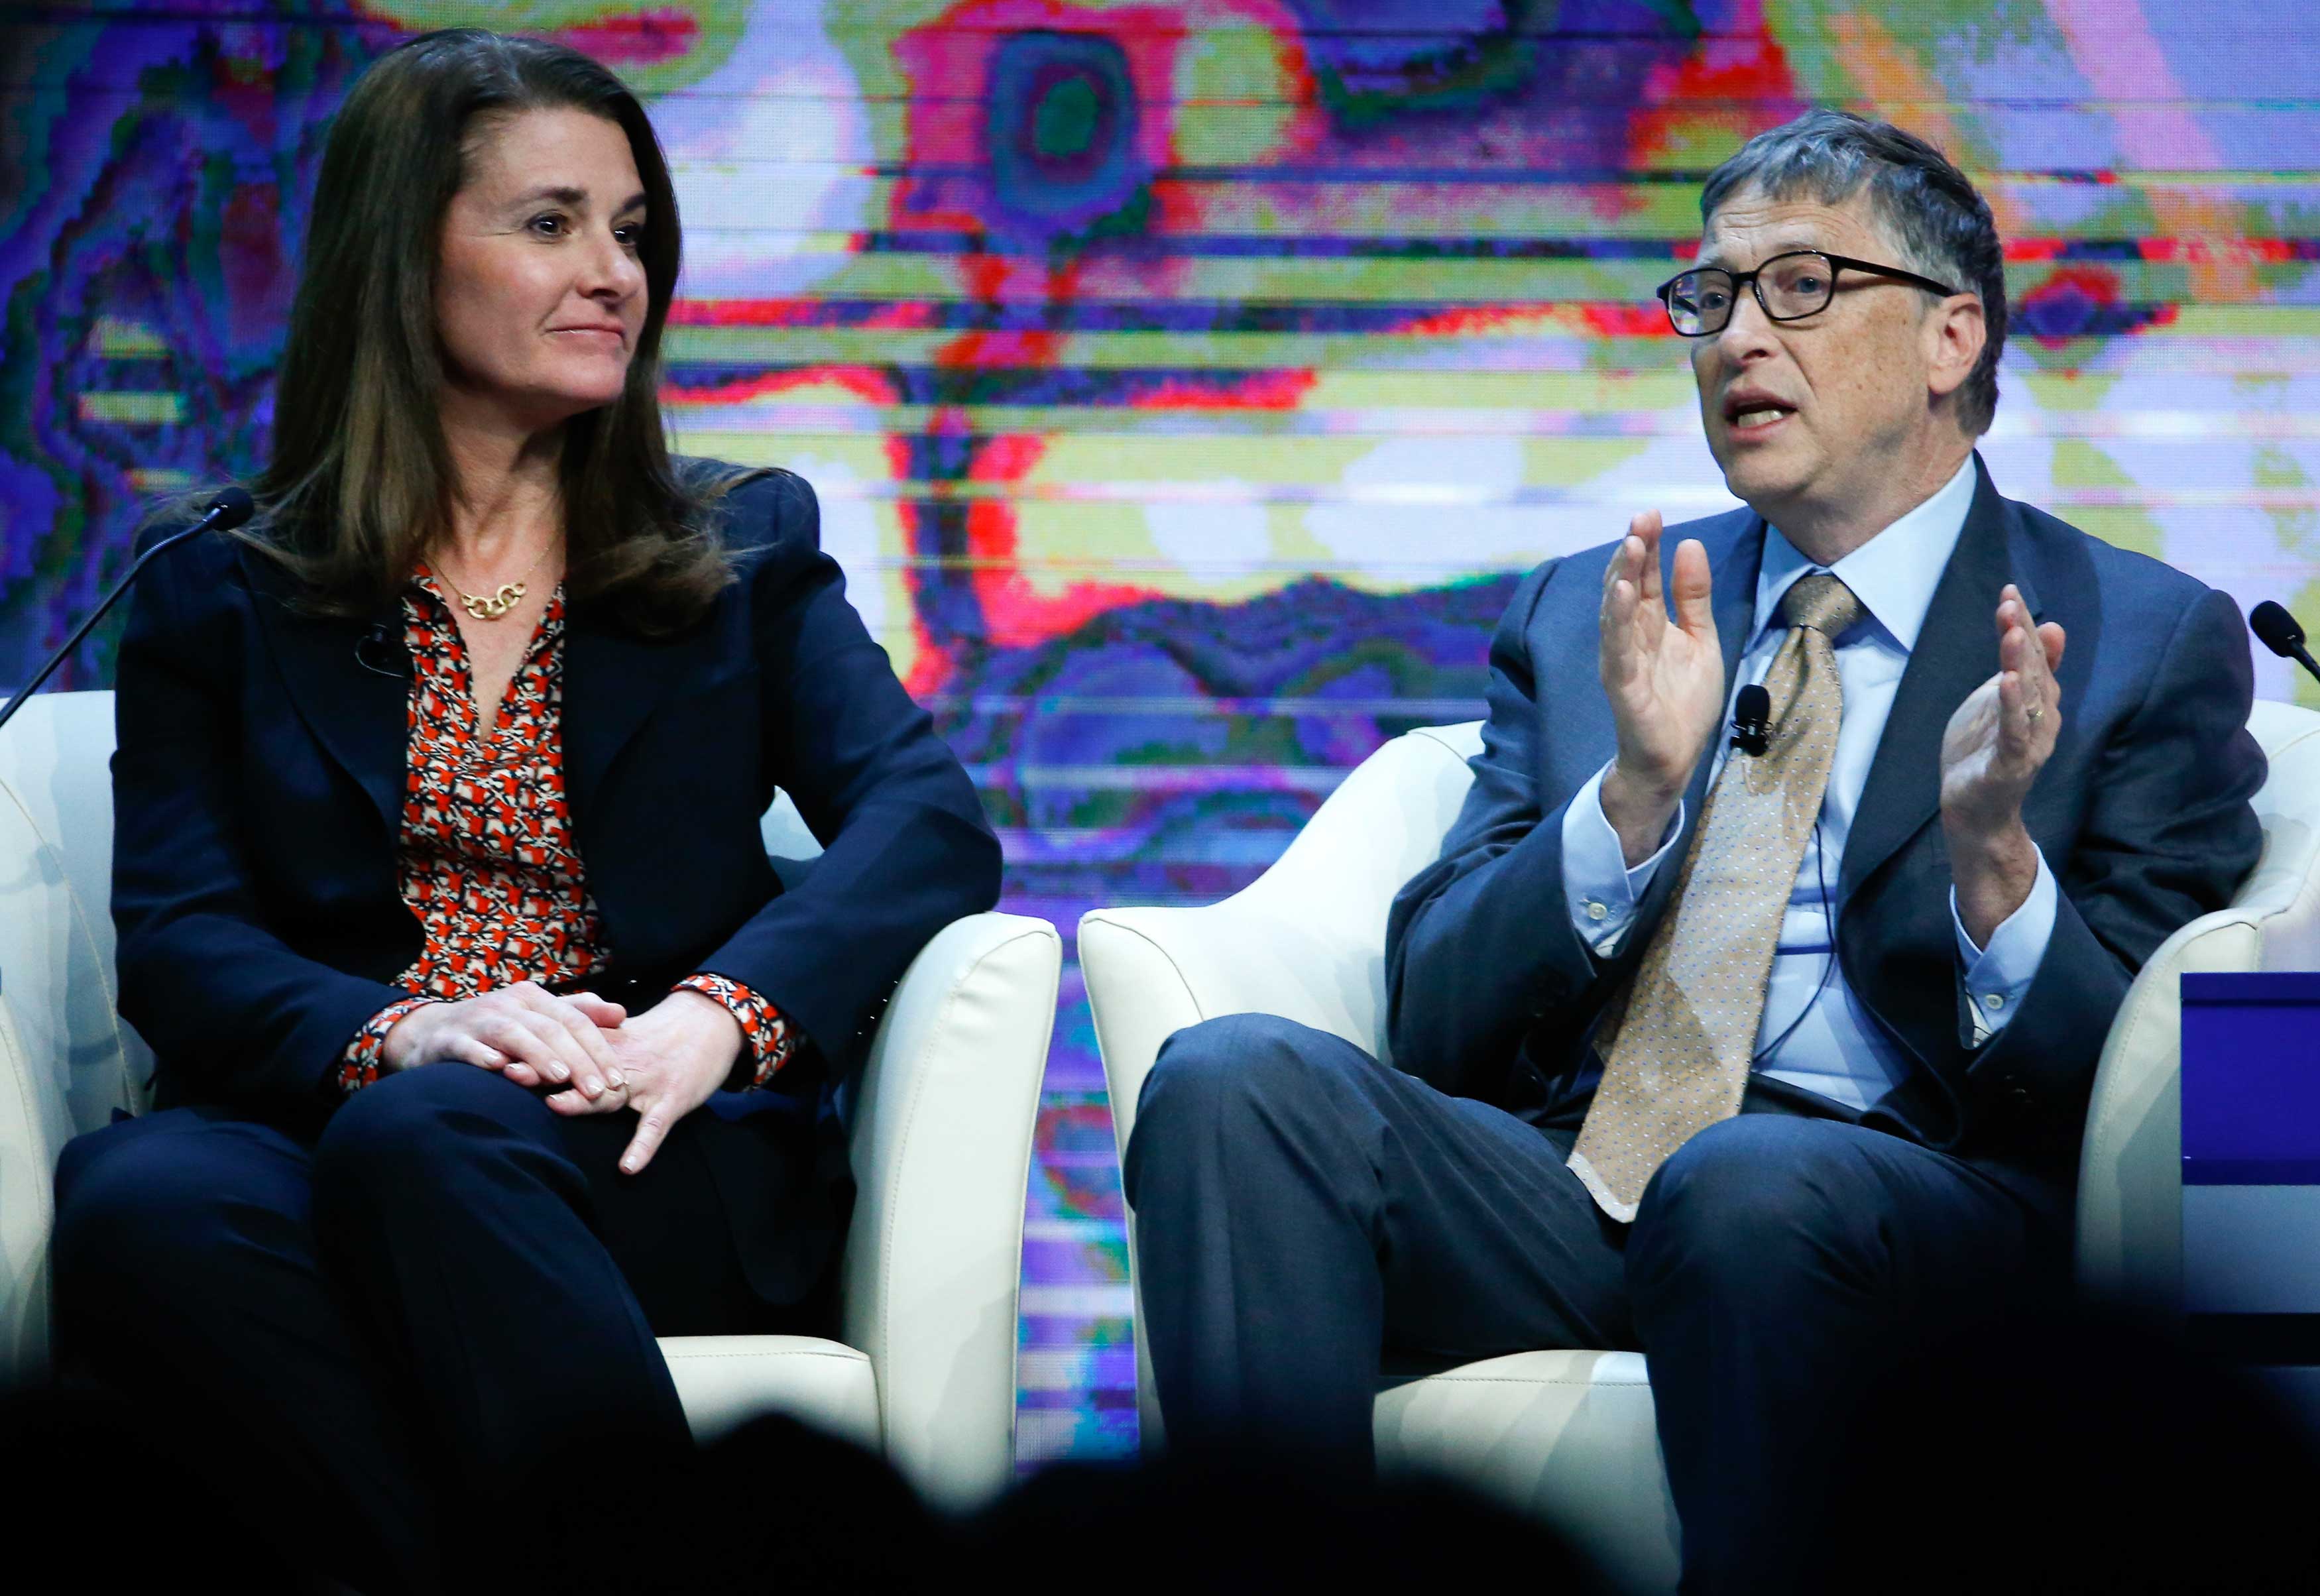 Bill and Melinda Gates at the World Economic Forum in Davos, Switzerland on Jan. 23, 2015. (Ruben Sprich—Reuters)